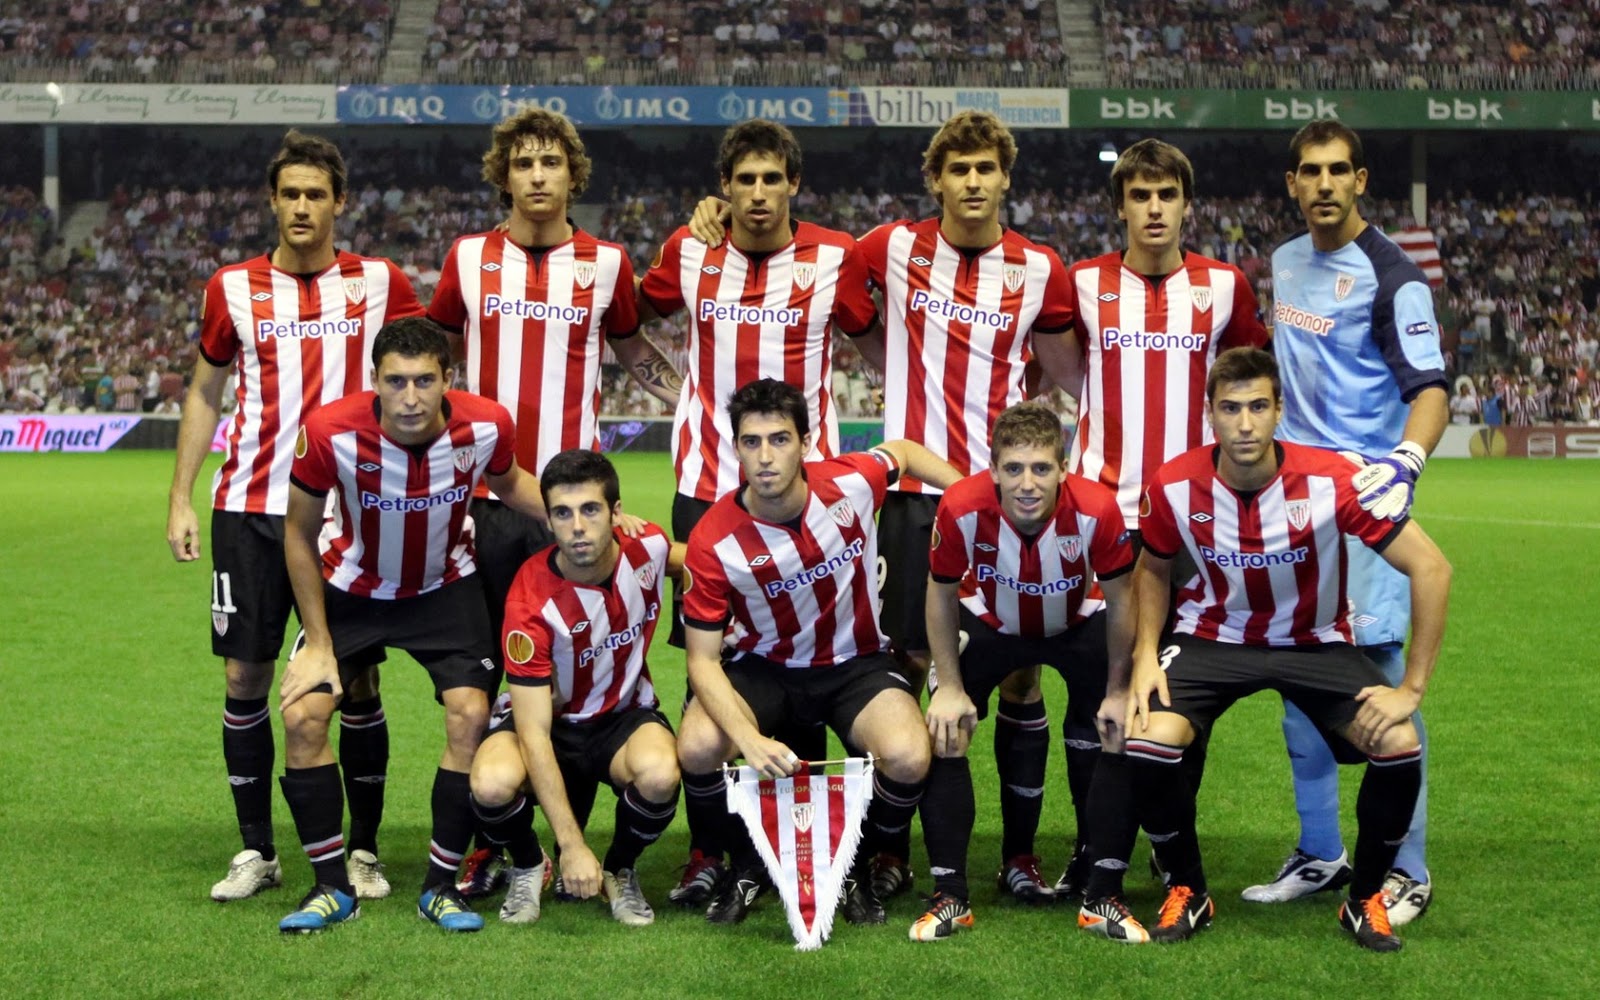 Marketingland: Alineaciones históricas Athletic Club de Bilbao1600 x 1000